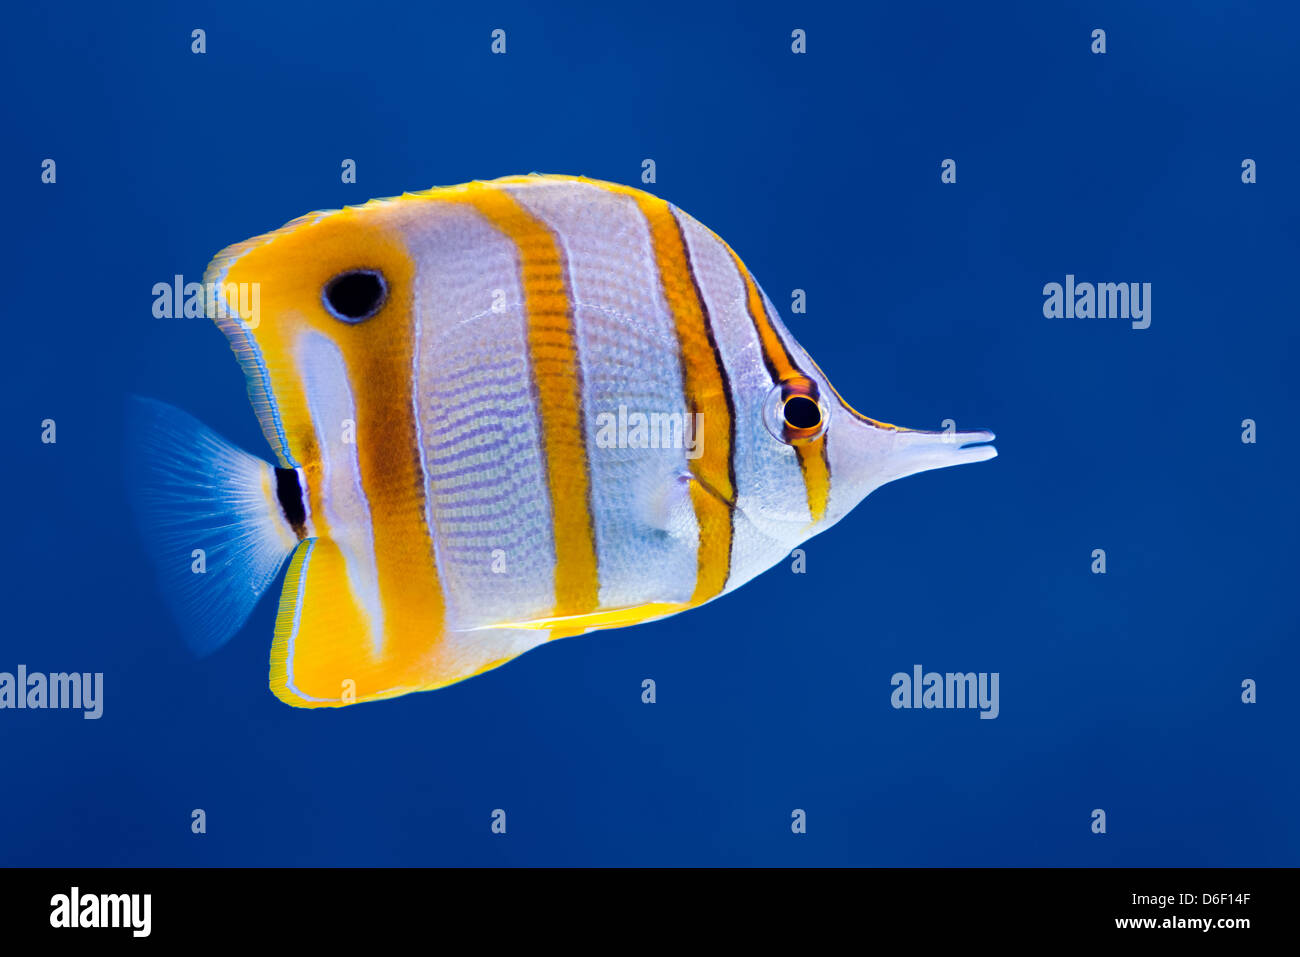 La vie de la mer : les récifs coralliens tropicaux exotiques (poissons papillons chelmon à bec (Chelmon Rostratus)) sur fond bleu naturel Banque D'Images